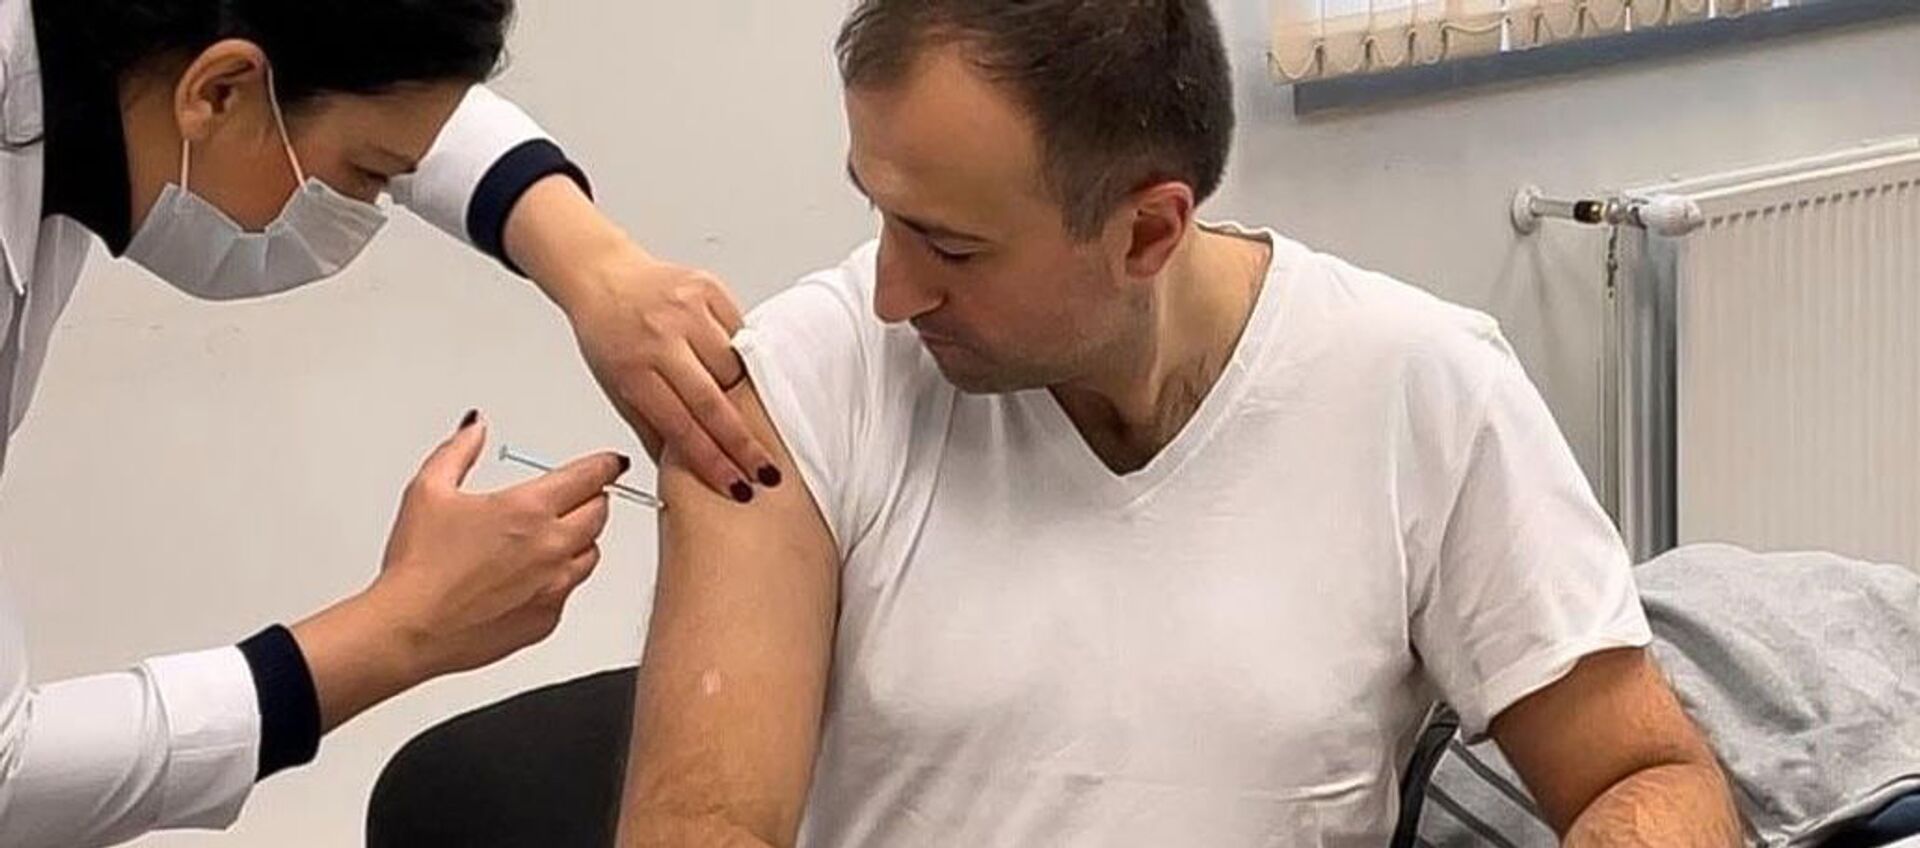 Министр здравоохранения Арсен Торосян вакцинируется от коронавируса вакциной Спутник V - Sputnik Армения, 1920, 12.01.2021